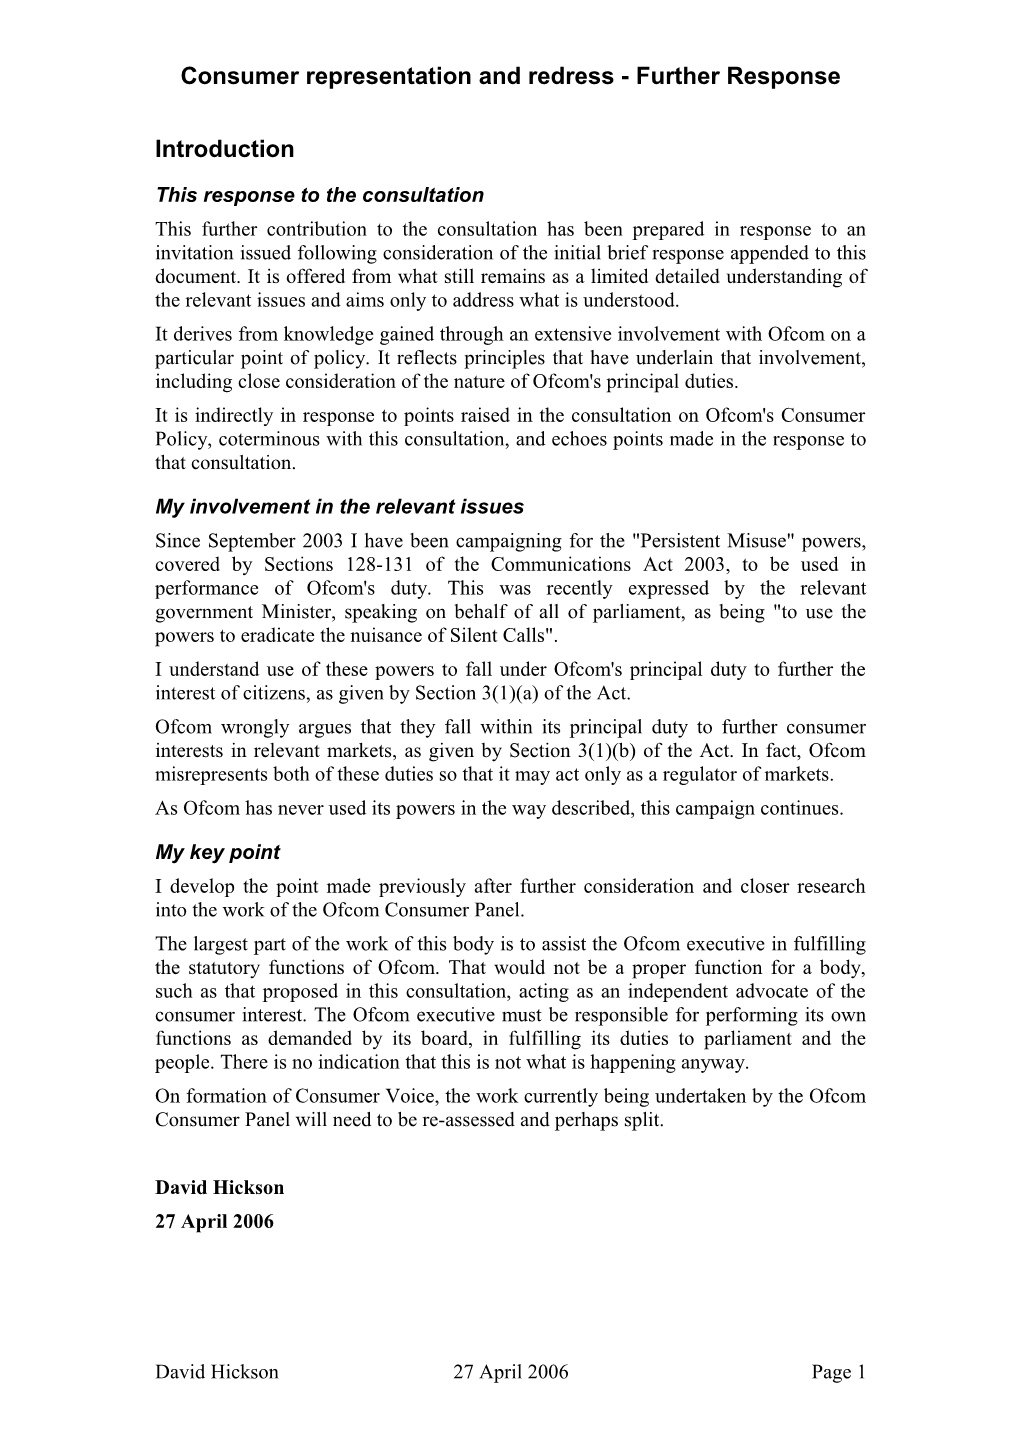 Ofcom S Consumer Policy - a Consultation - Response